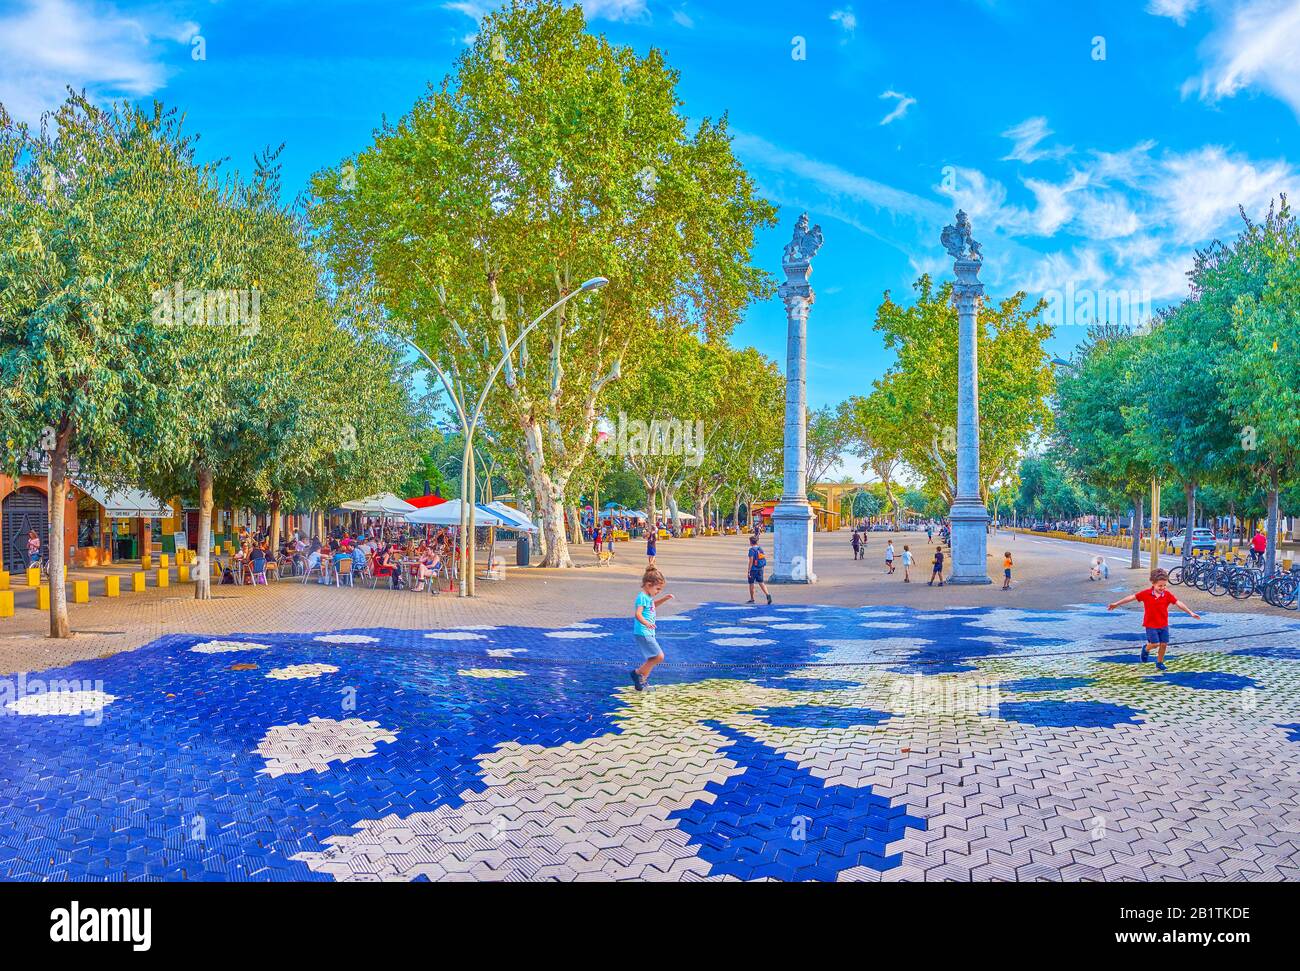 Sevilla, SPANIEN - 1. OKTOBER 2019: Kinder spielen auf dem La Alameda-Platz in verschiedenen Actie-Spielen und laufen durch die Bodenbrunnen, 1. Oktober in Sevilla Stockfoto